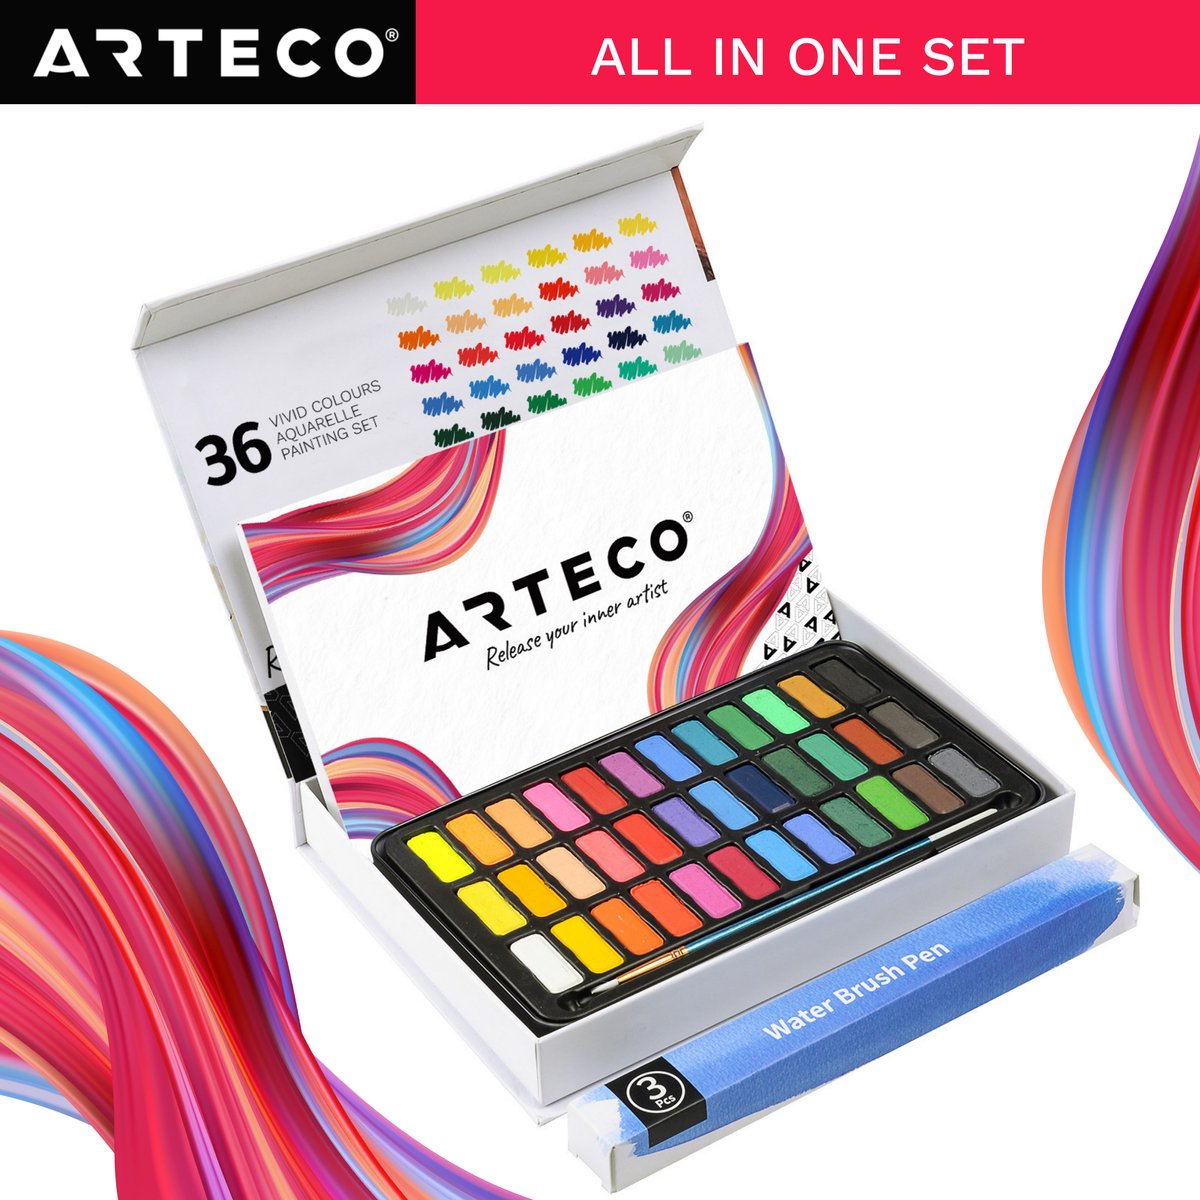 artecho 36 colors solid watercolor cake